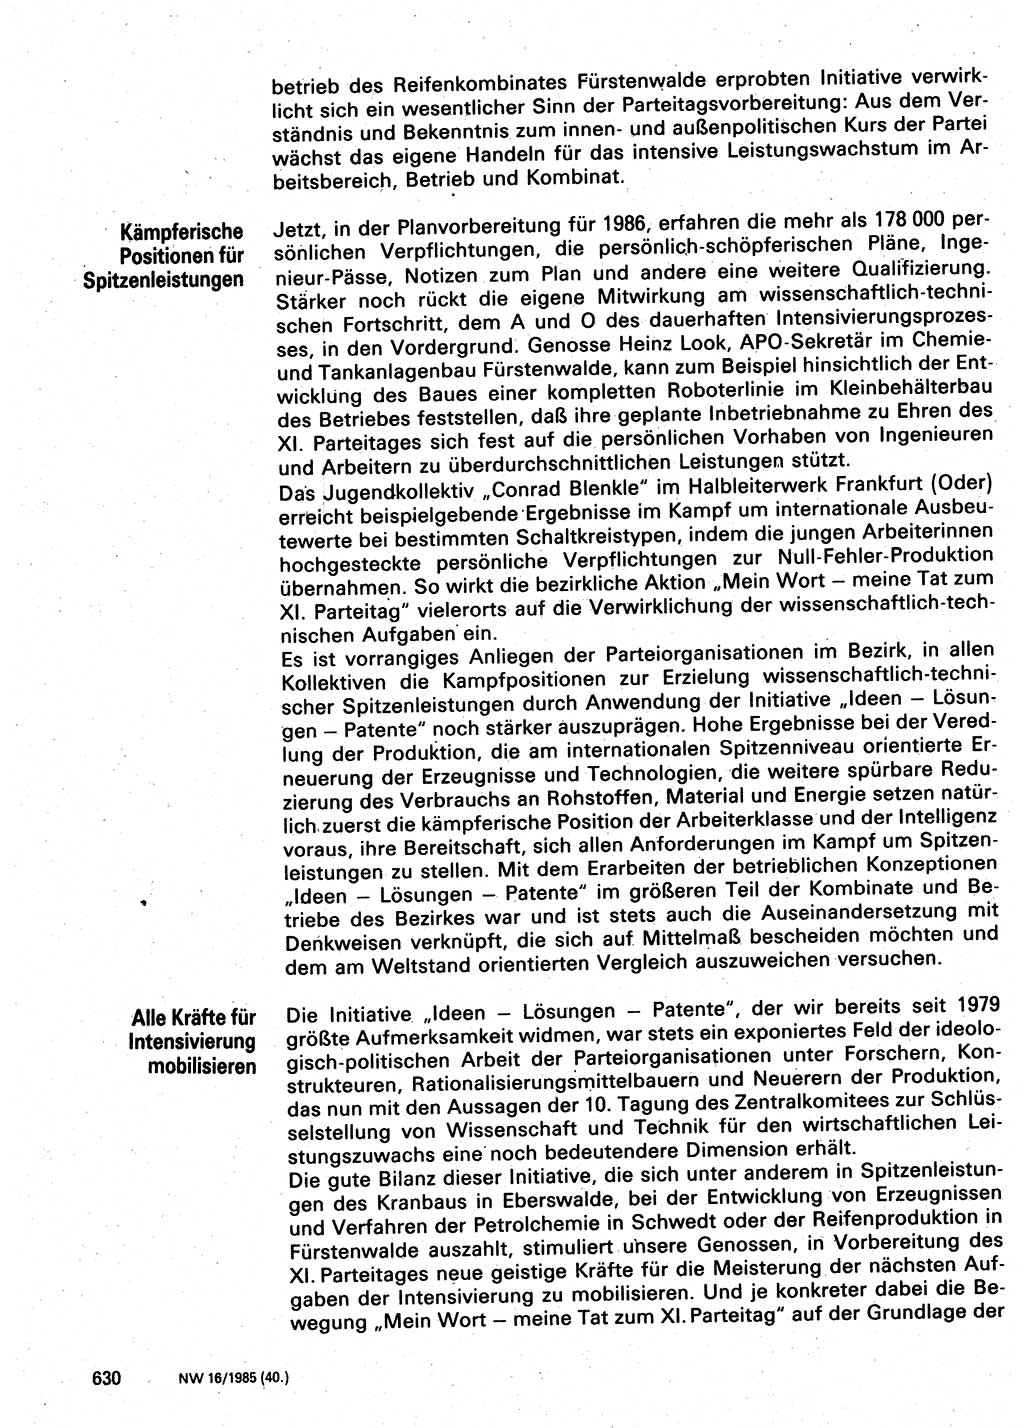 Neuer Weg (NW), Organ des Zentralkomitees (ZK) der SED (Sozialistische Einheitspartei Deutschlands) für Fragen des Parteilebens, 40. Jahrgang [Deutsche Demokratische Republik (DDR)] 1985, Seite 630 (NW ZK SED DDR 1985, S. 630)